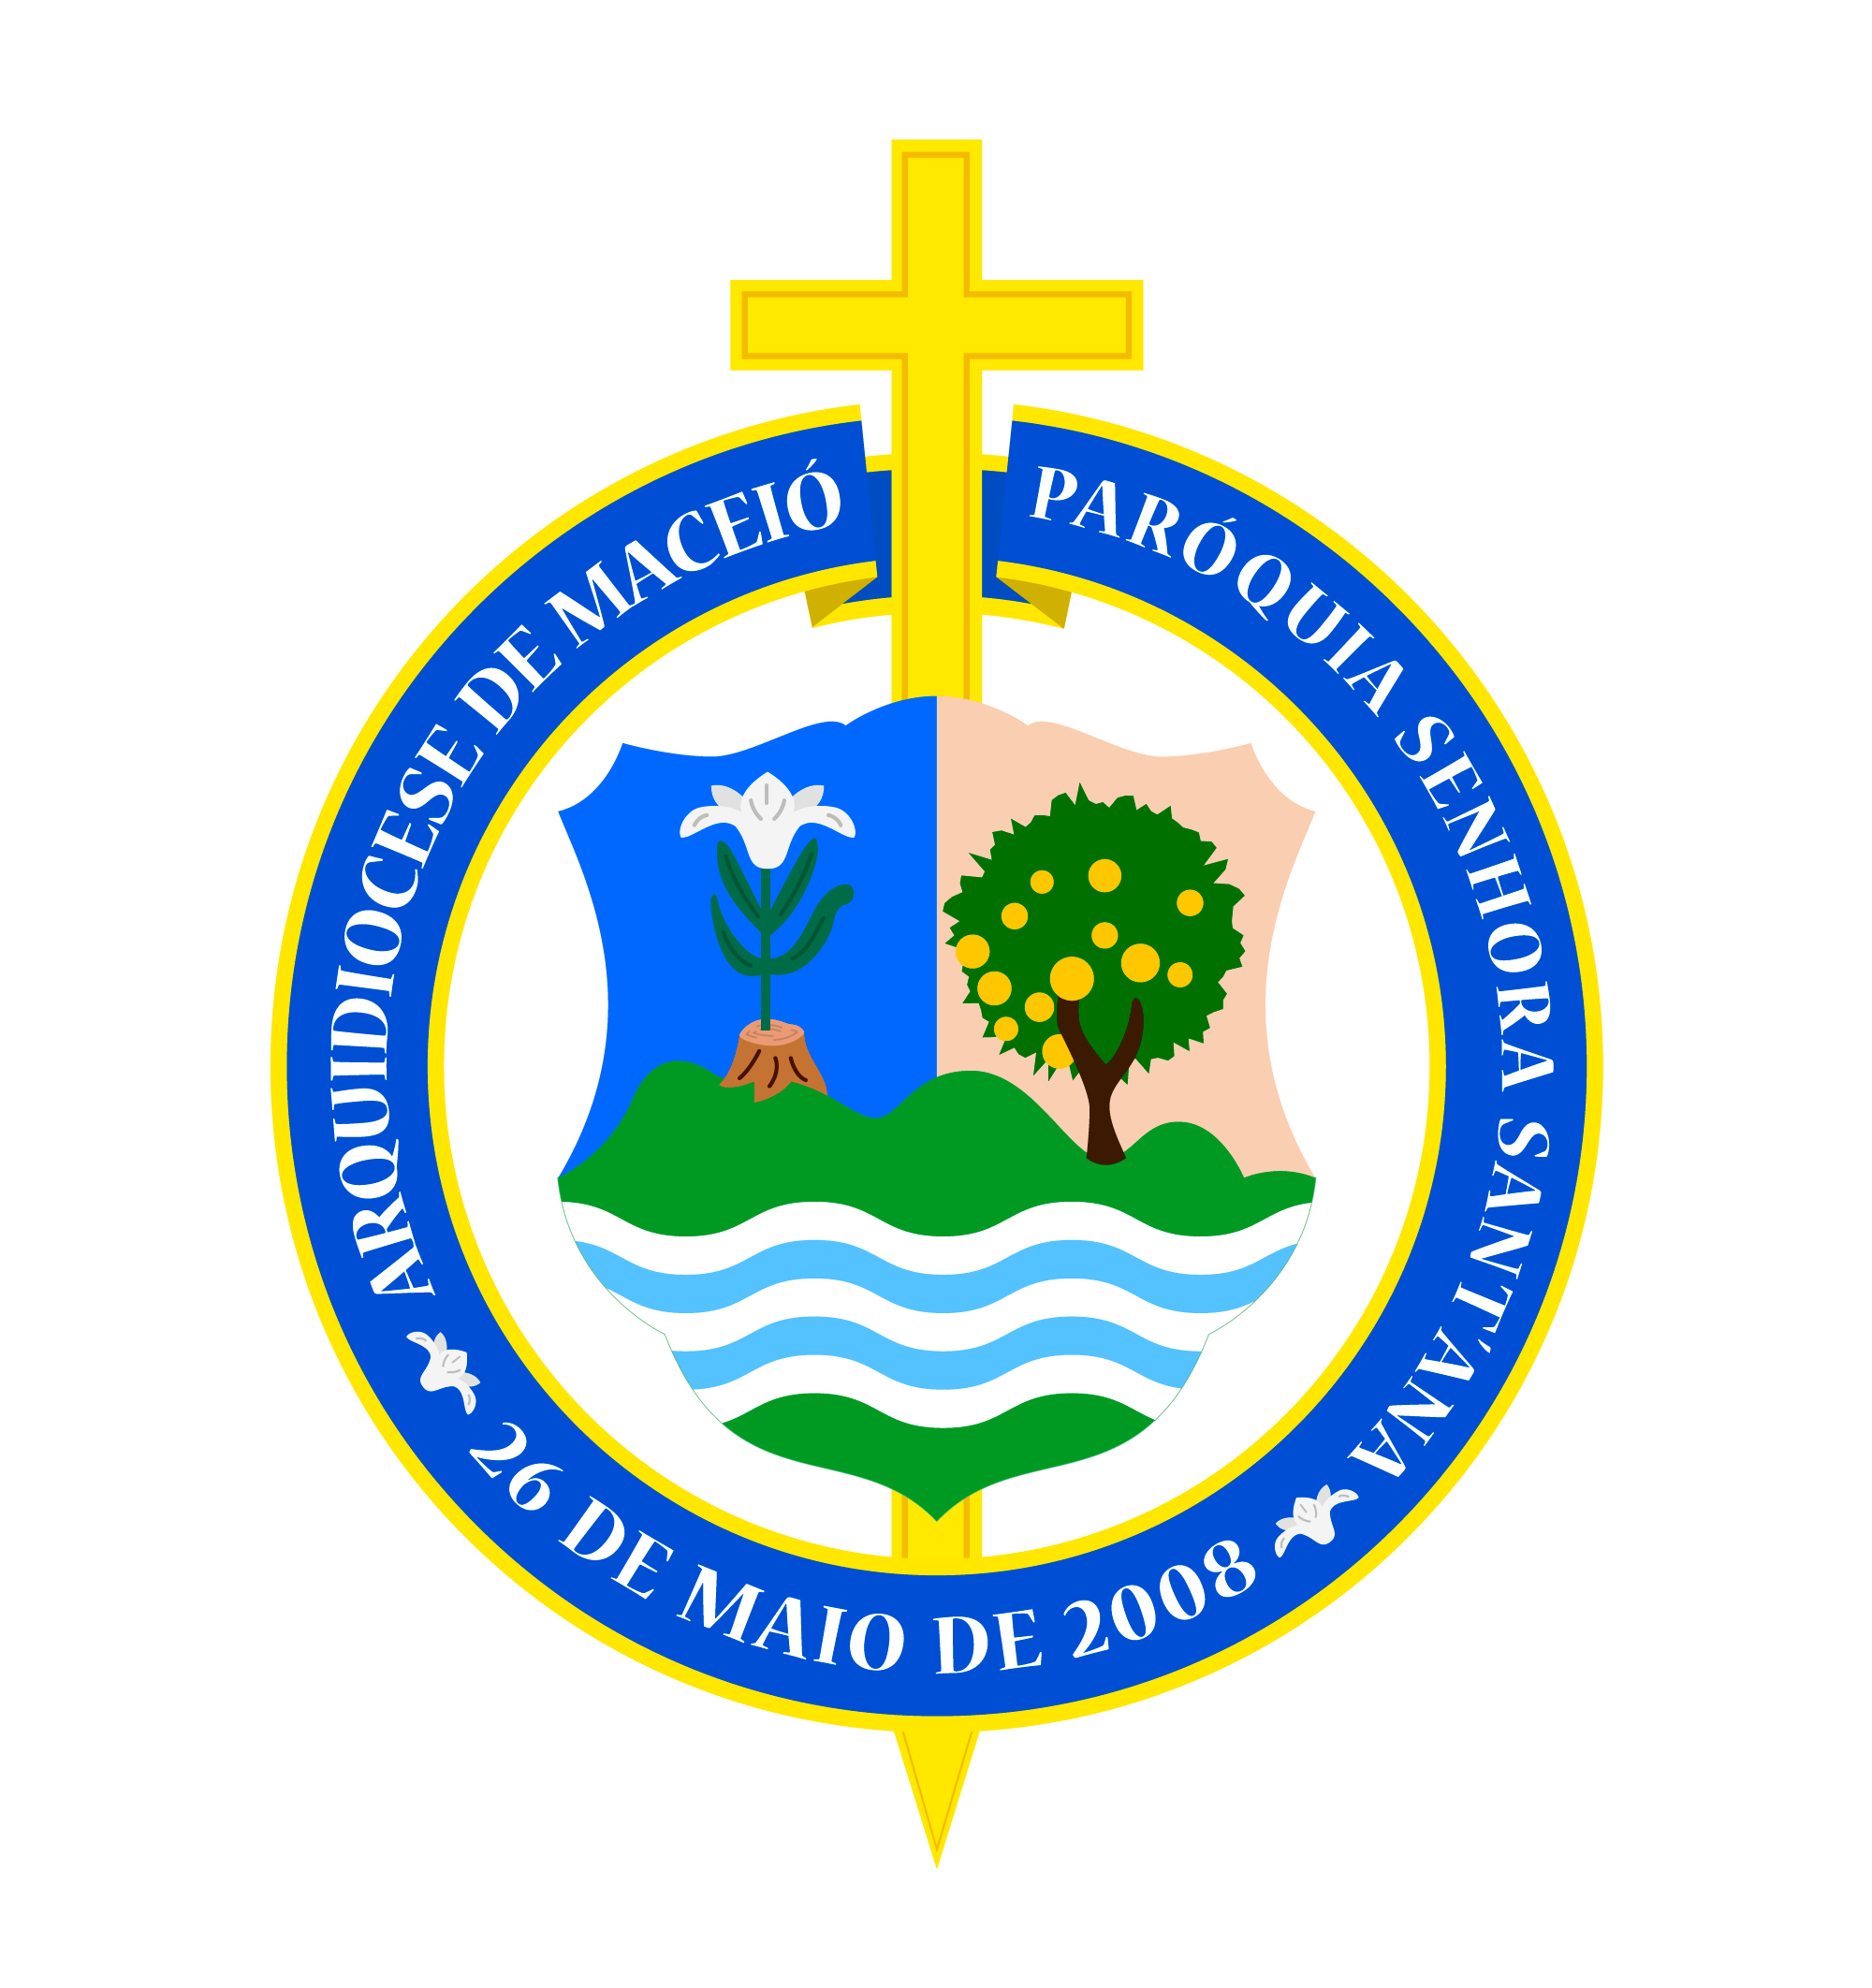 O Semeador - Centenário Arquidiocese de Maceió